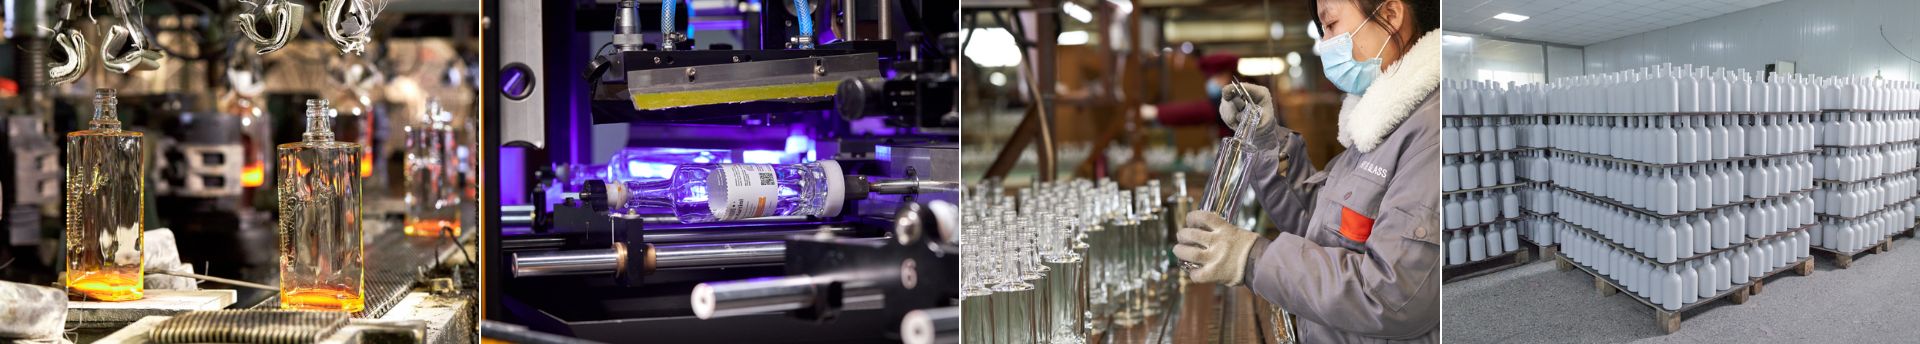 Хуэйхэский завод по производству стеклянных бутылок для ликера